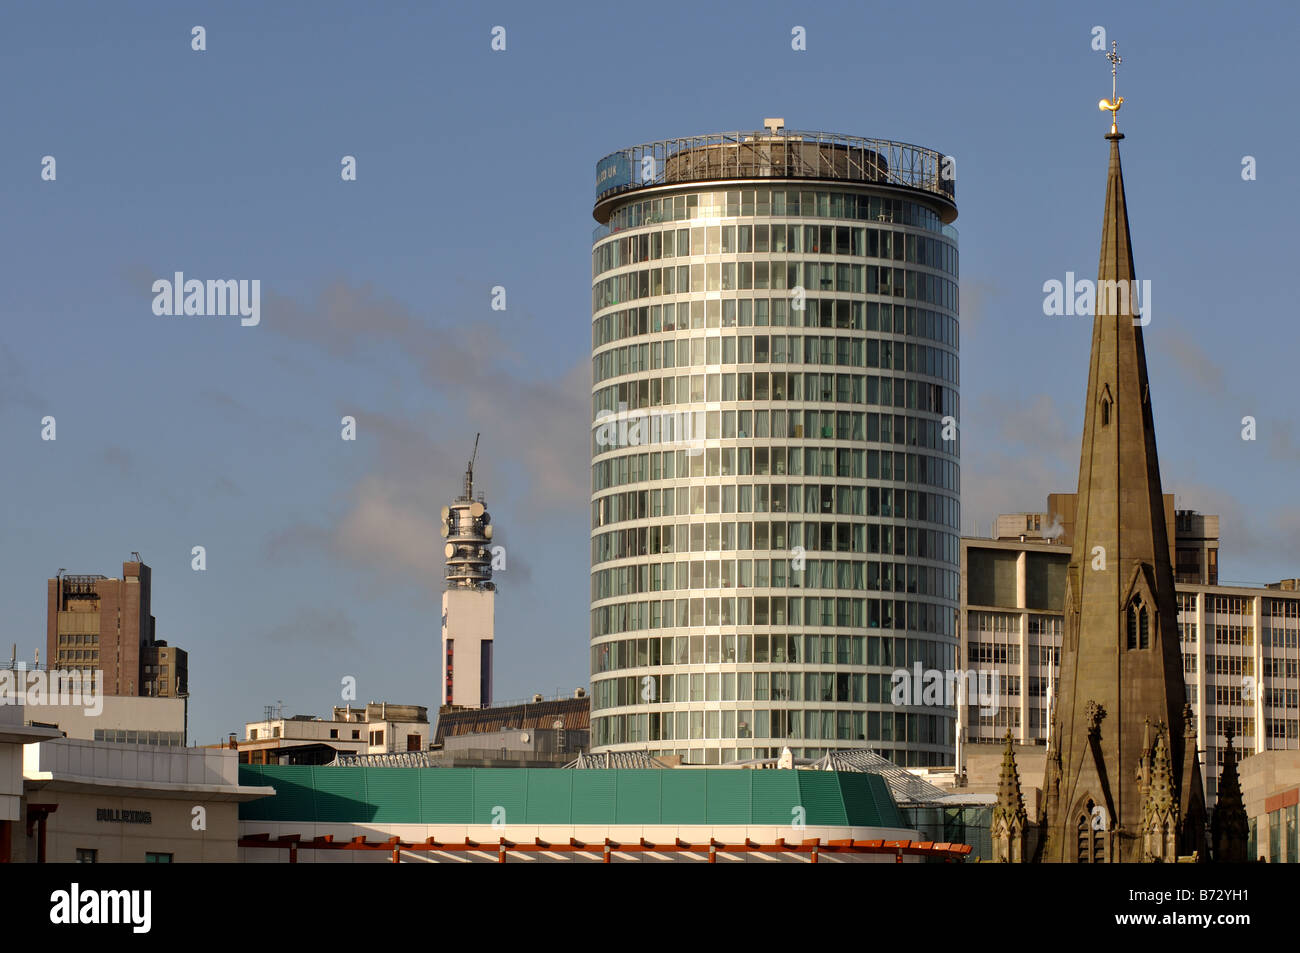 Le centre-ville de Birmingham, England, UK Banque D'Images